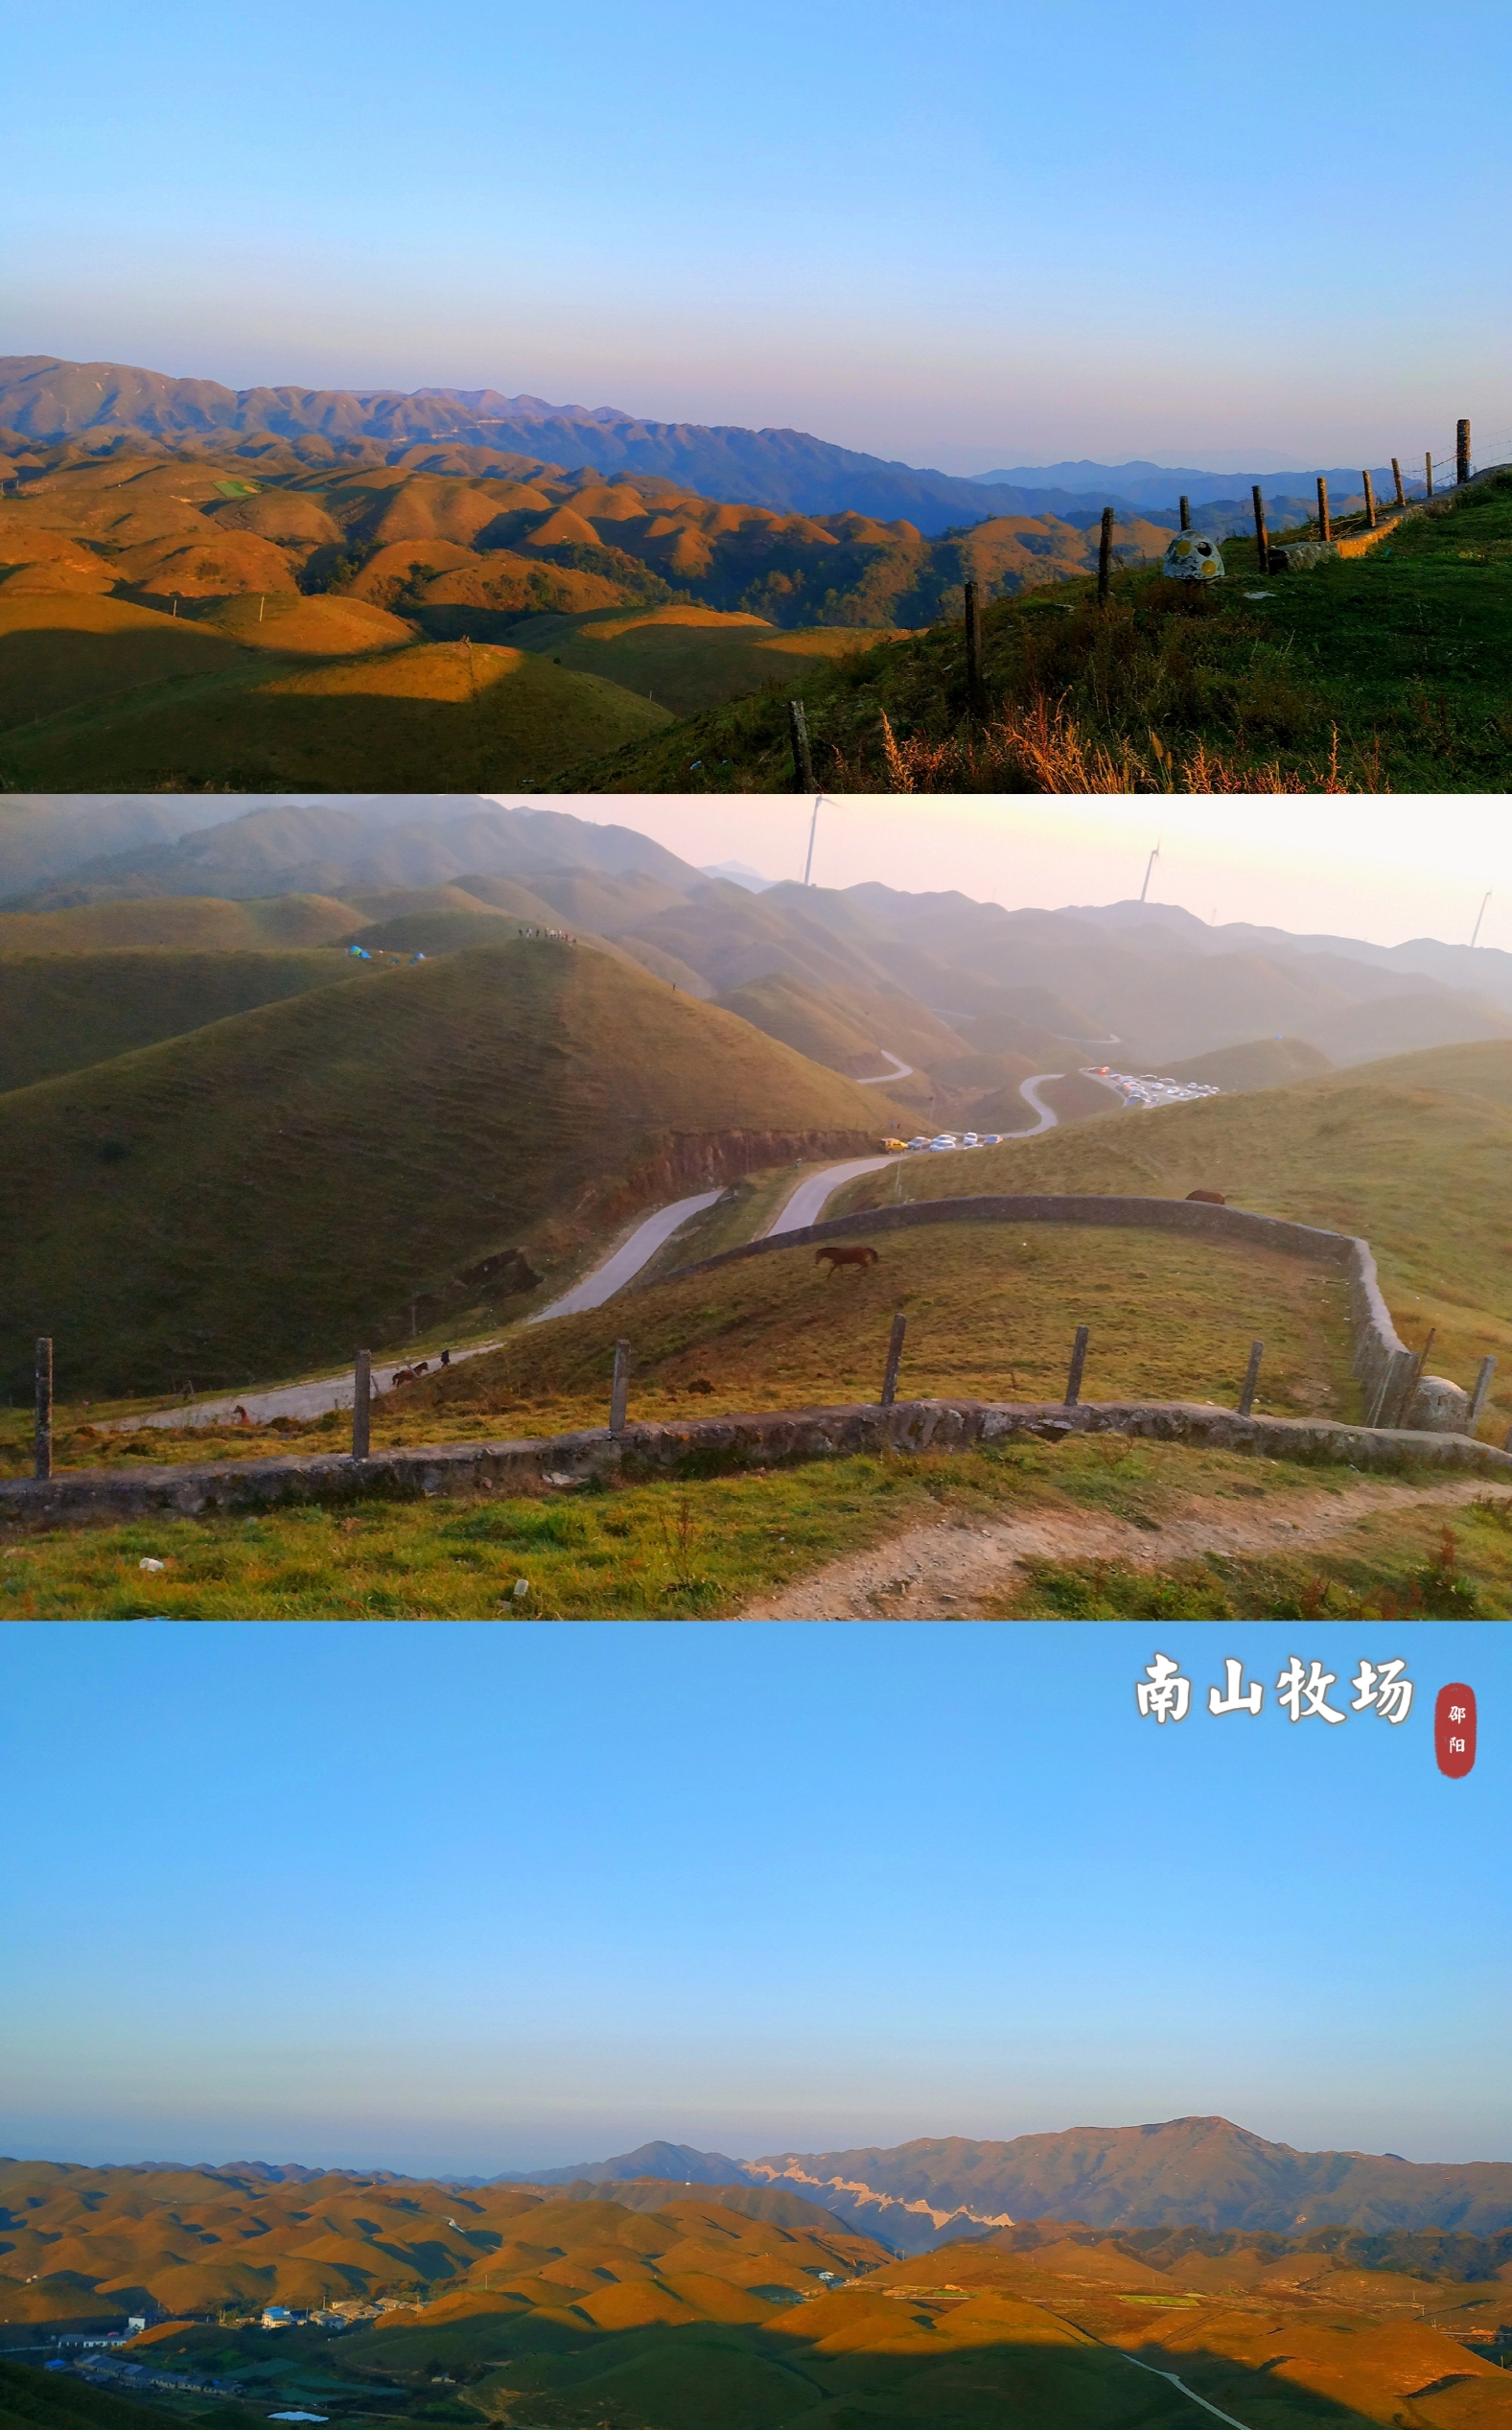 邵阳·南山牧场丨五一旅行 来南山牧场徒步露营